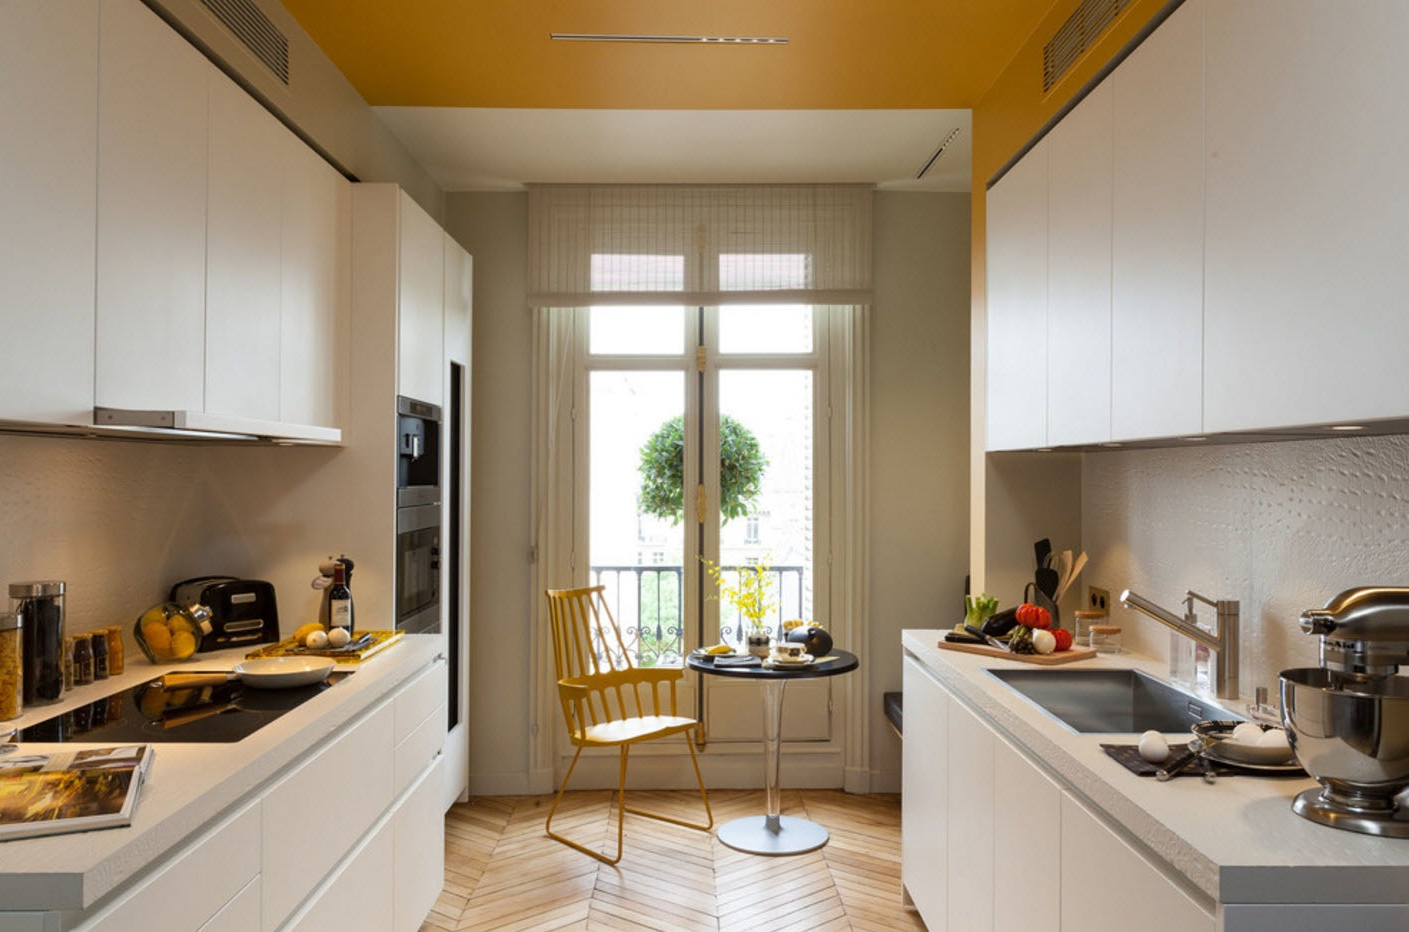 Дизайн прямоугольной кухни - 22 фото примеров и идеи интерьера